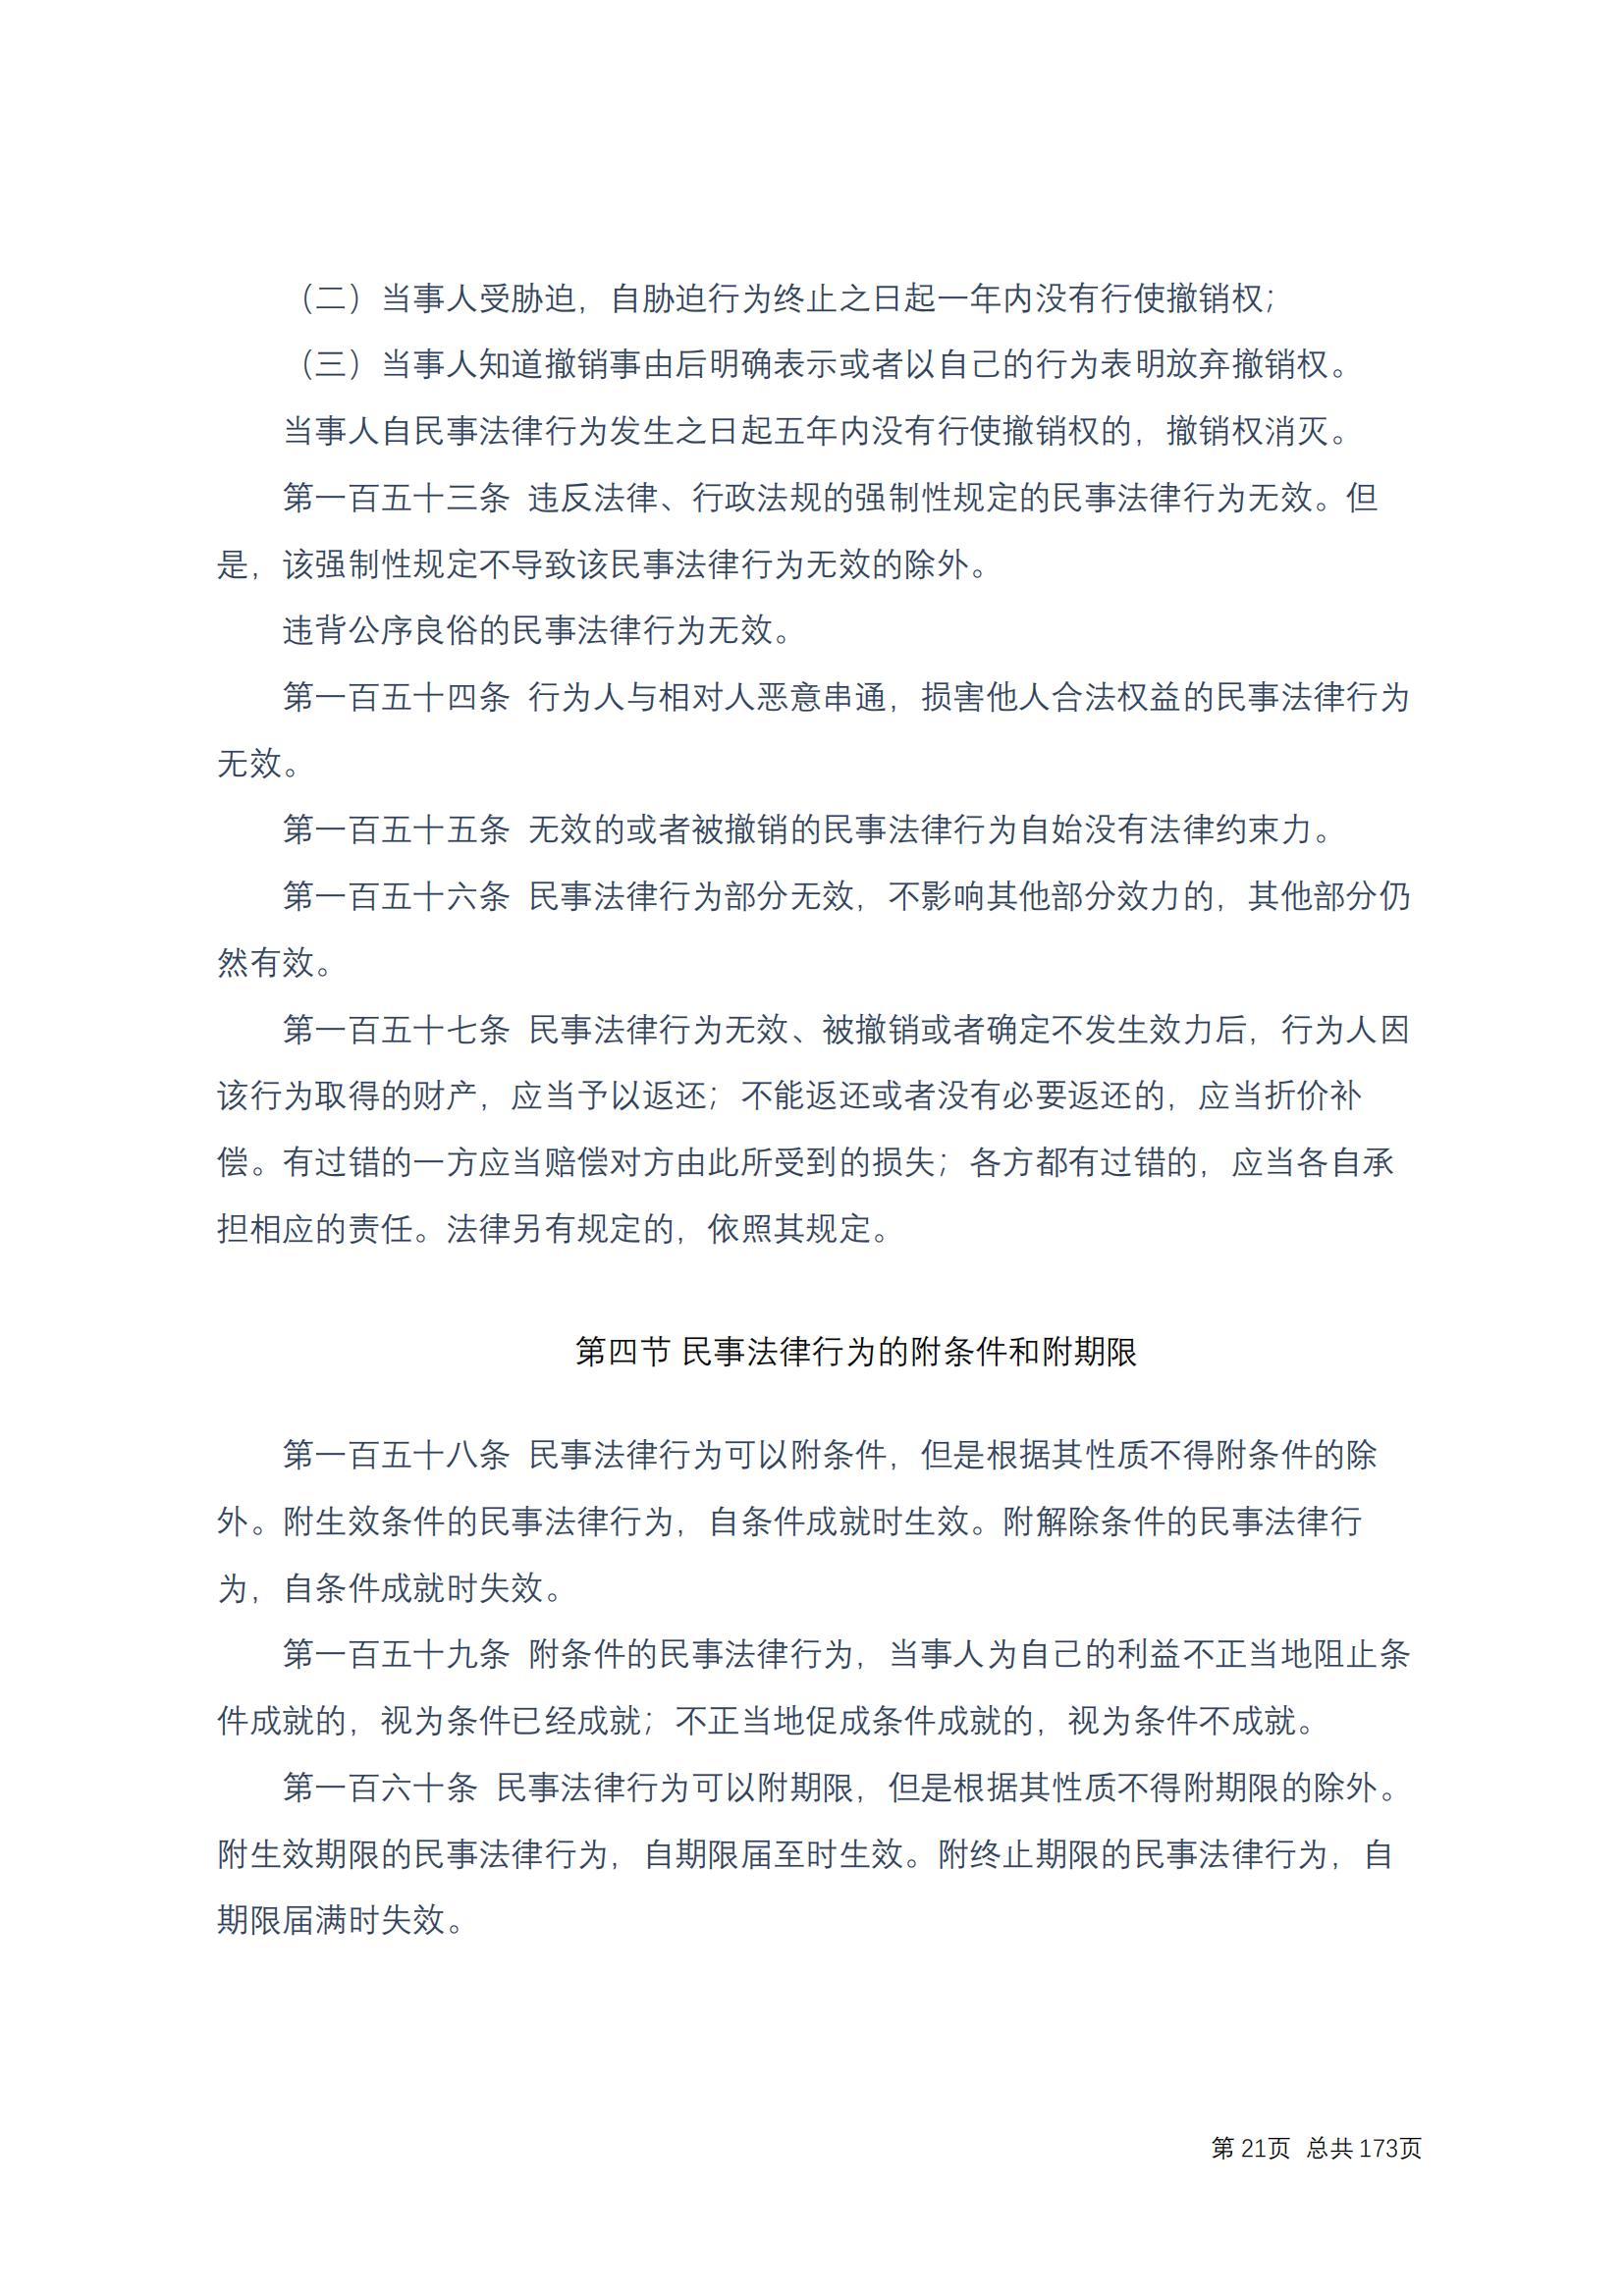 中华人民共和国民法典 修改过_20